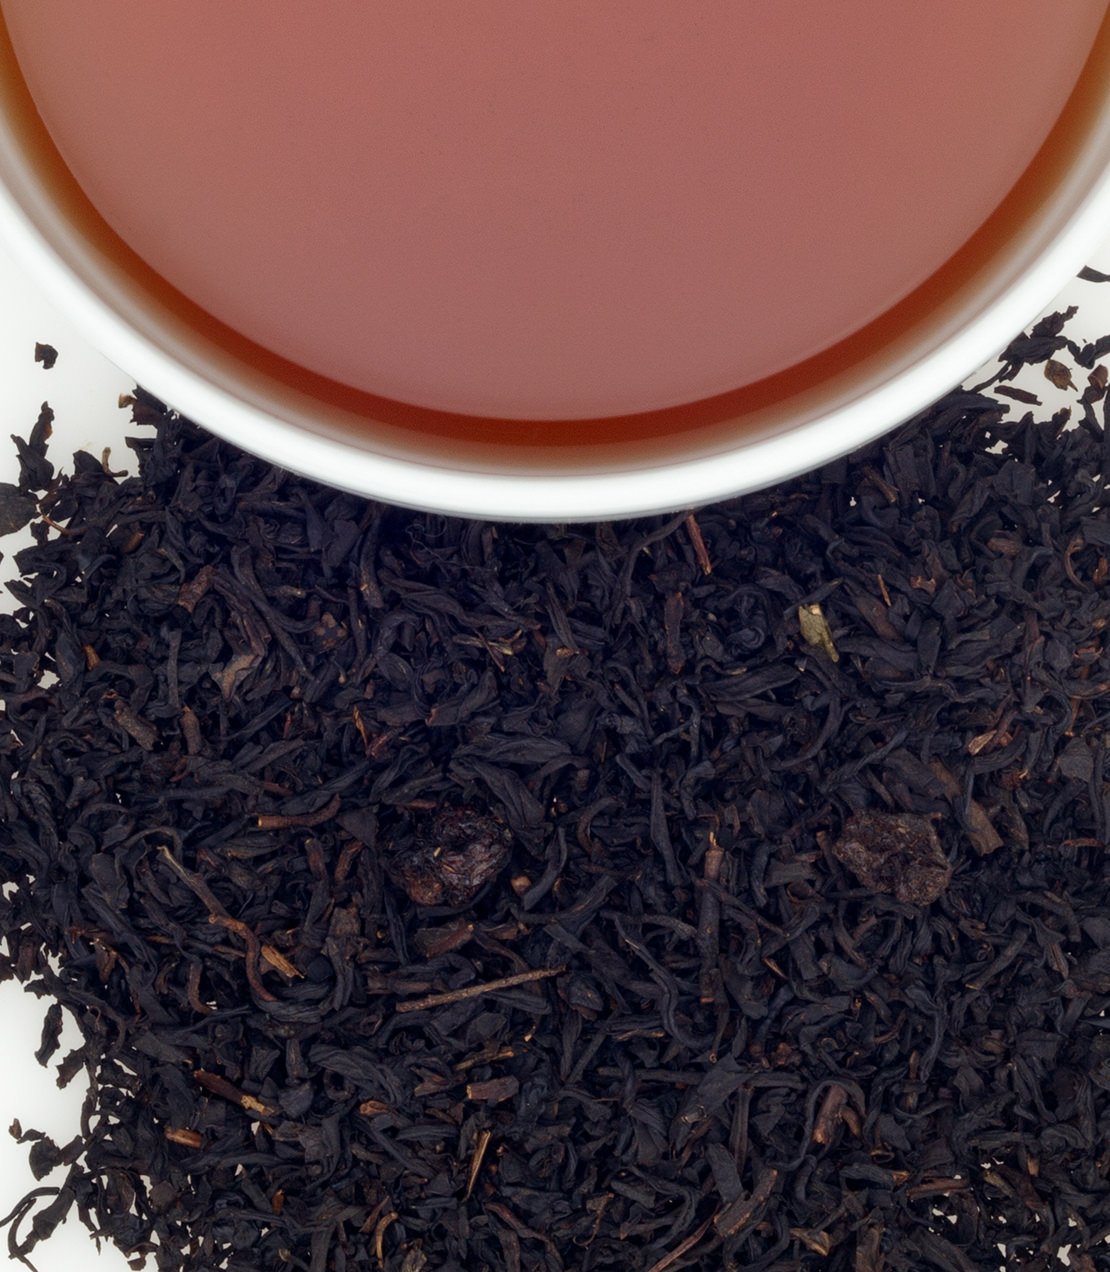 Black Currant Tea -   - Harney & Sons Fine Teas